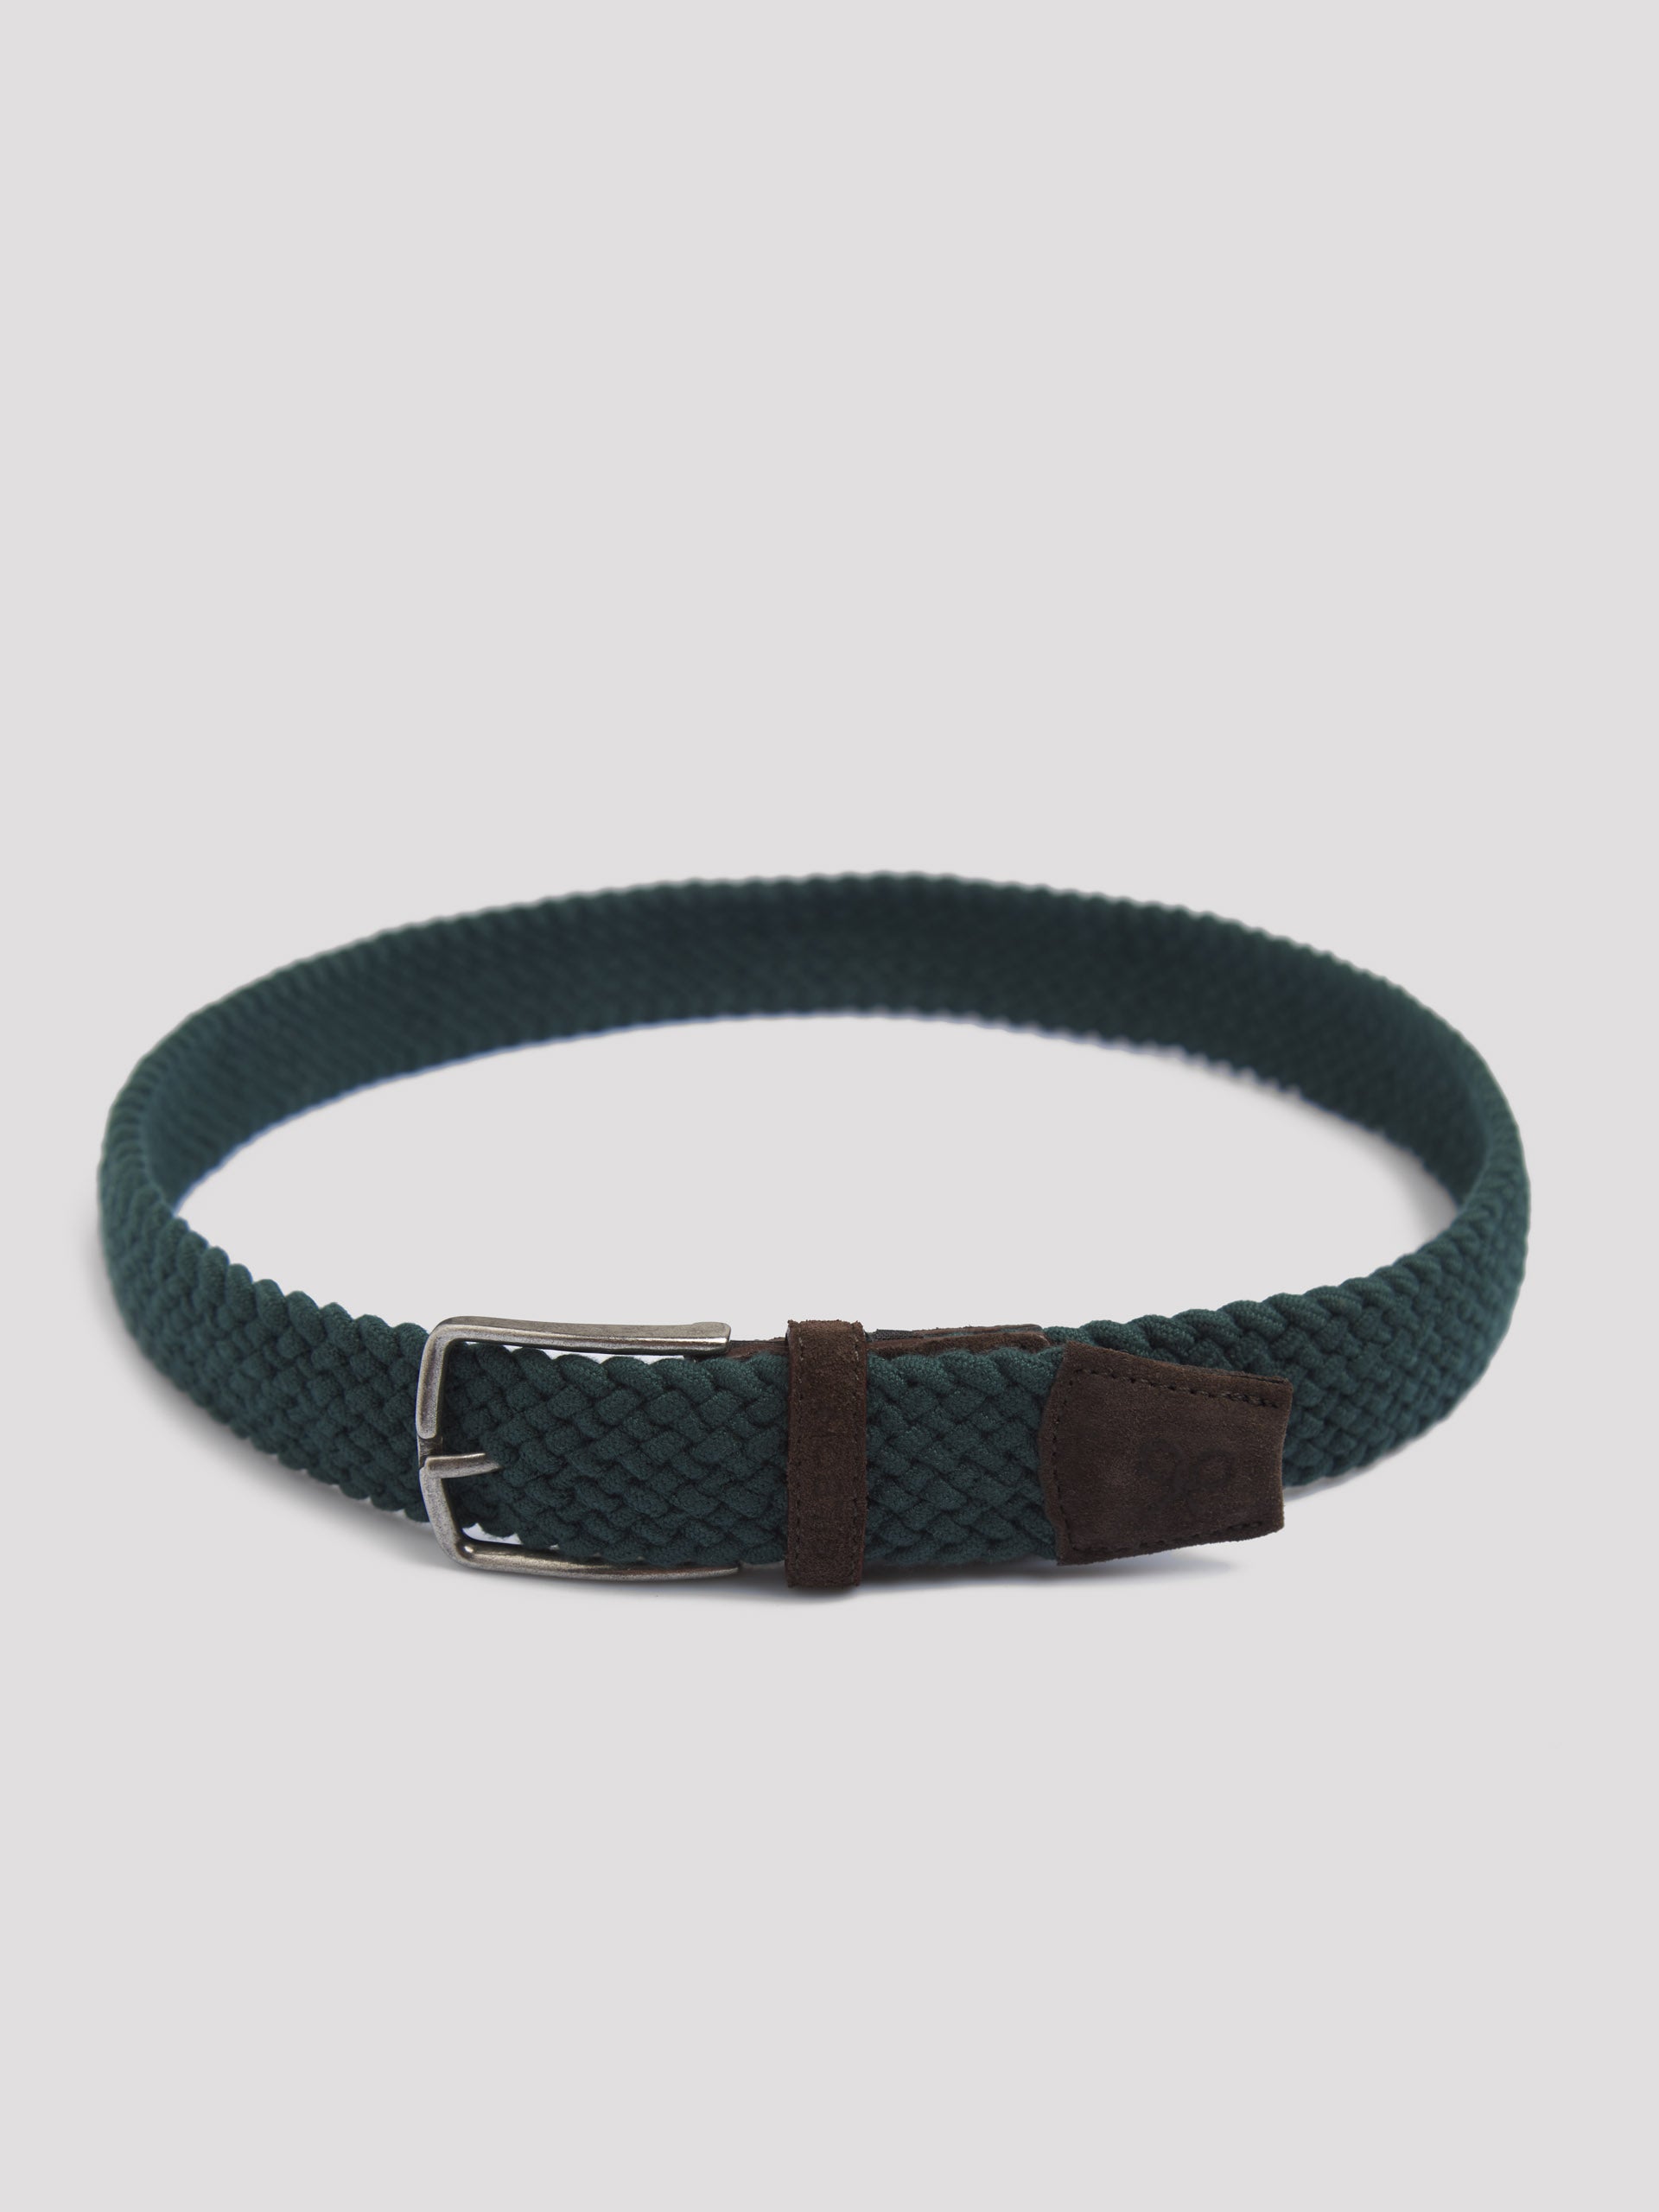 Cinturon elastico trenzado verde